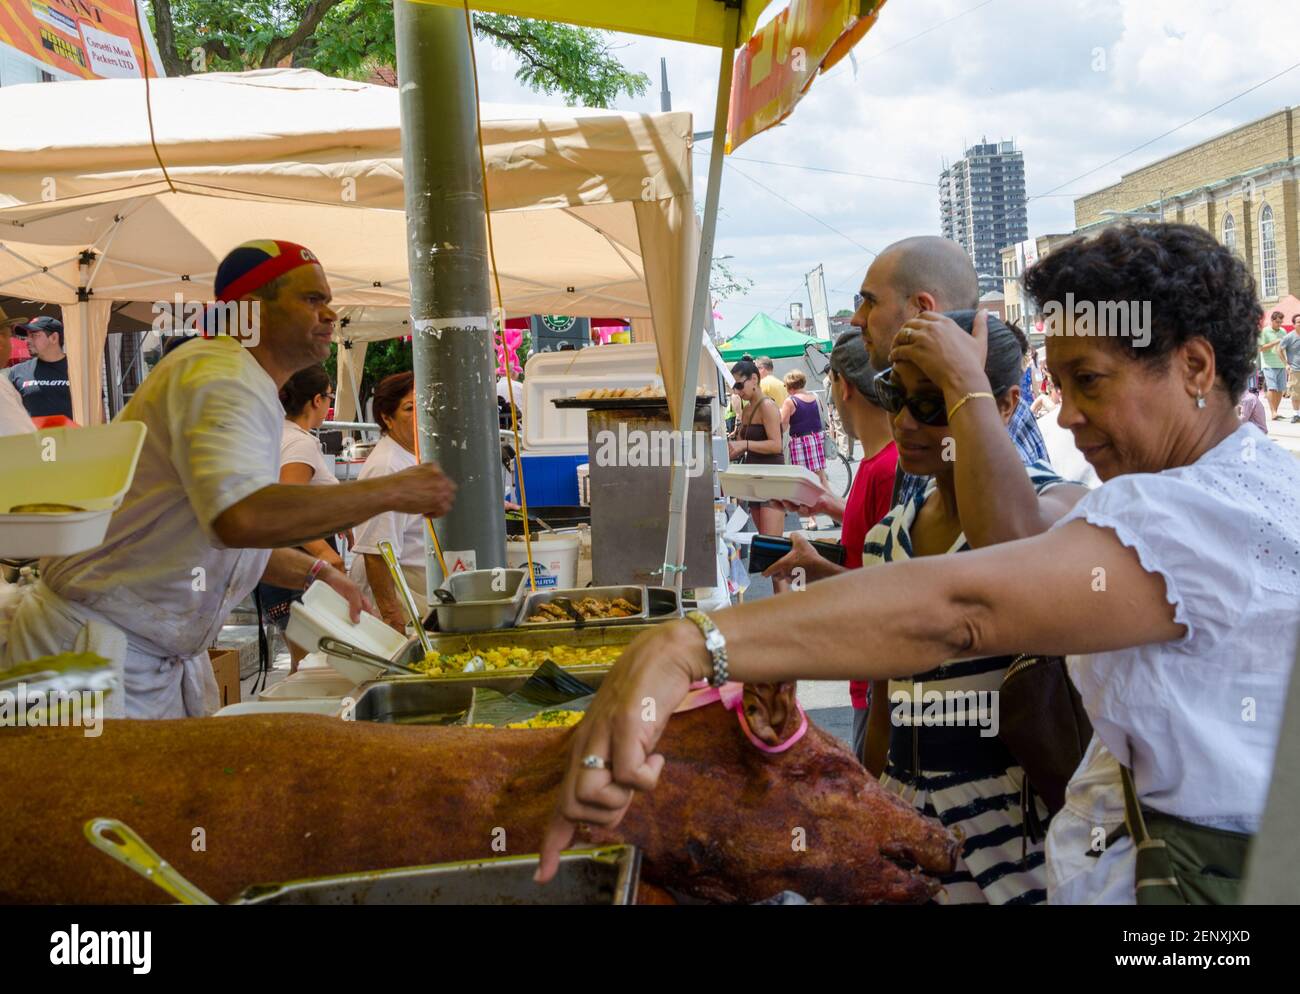 Salsa auf dem St. Saint Clair Festival Szenen: Die Leute an einem Outdoor-Food-Stand schauen über die Serviertabletts, um zu entscheiden, was sie essen wollen. Die Dame im Stockfoto